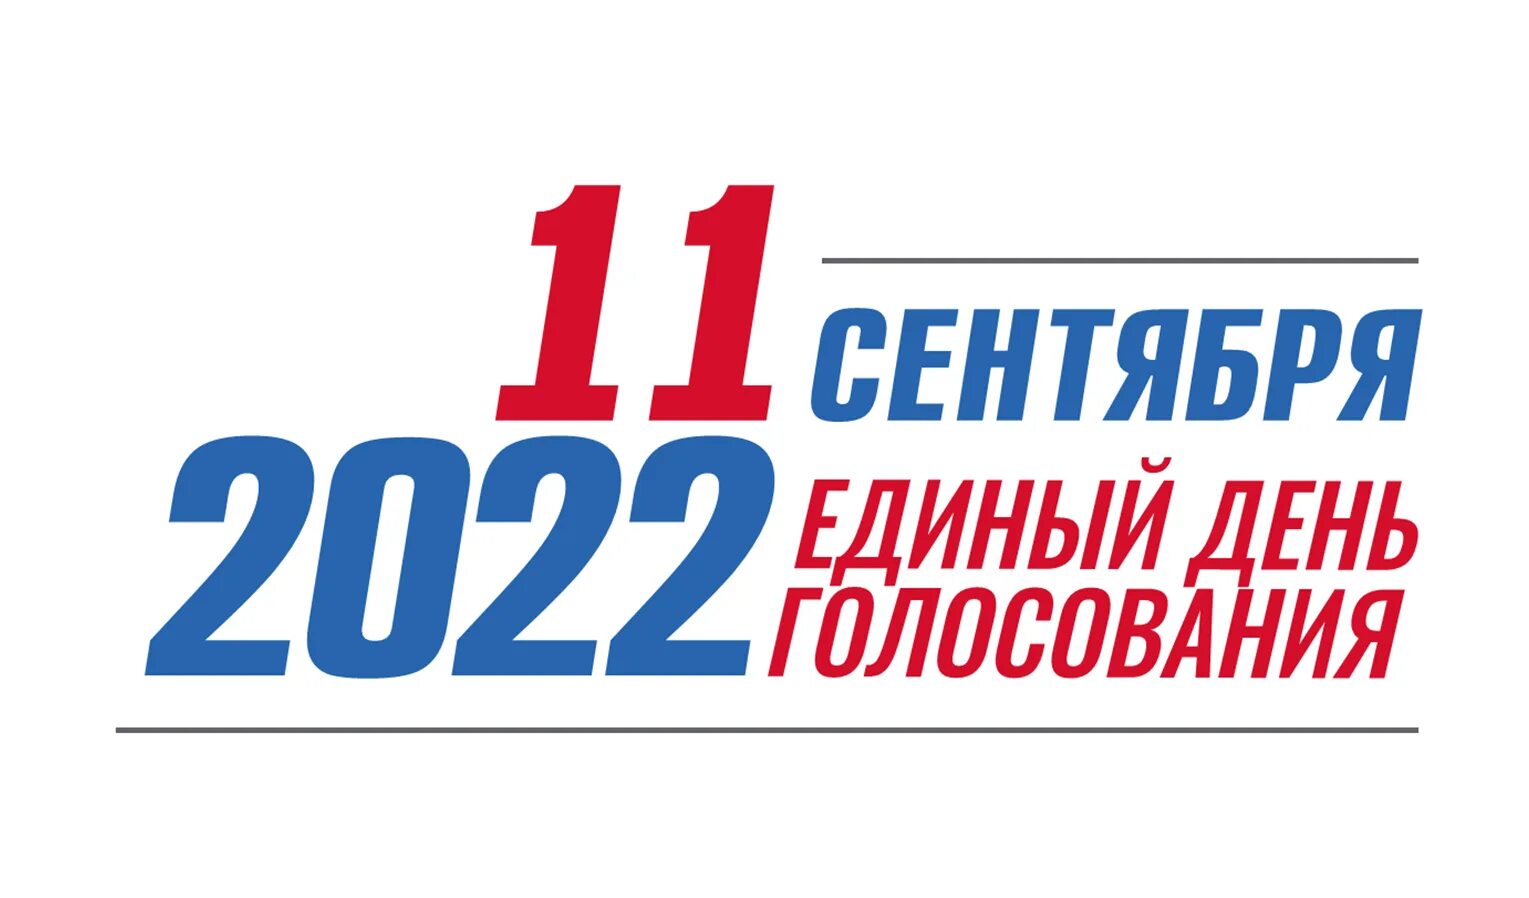 Единый день голосования в 2022 году. Единый день голосования 11 сентября 2022 года. Единый день голосования 2022 логотип. ЕДГ 2022.